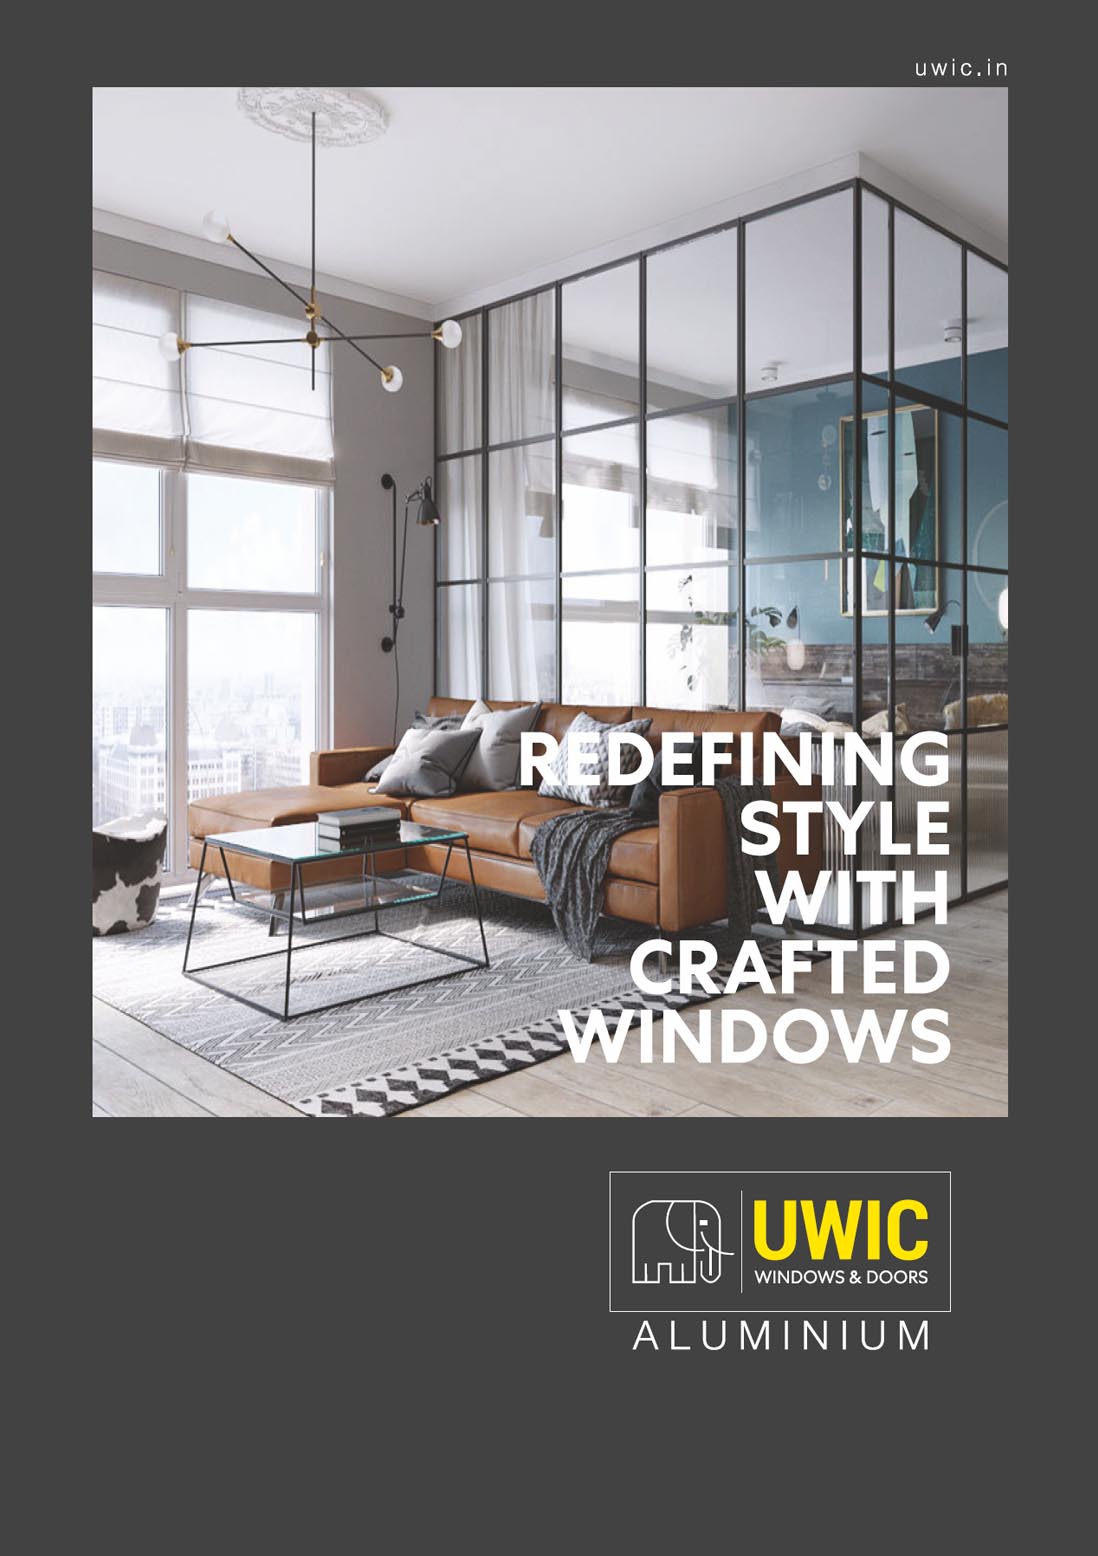 UWIC Windows & Doors